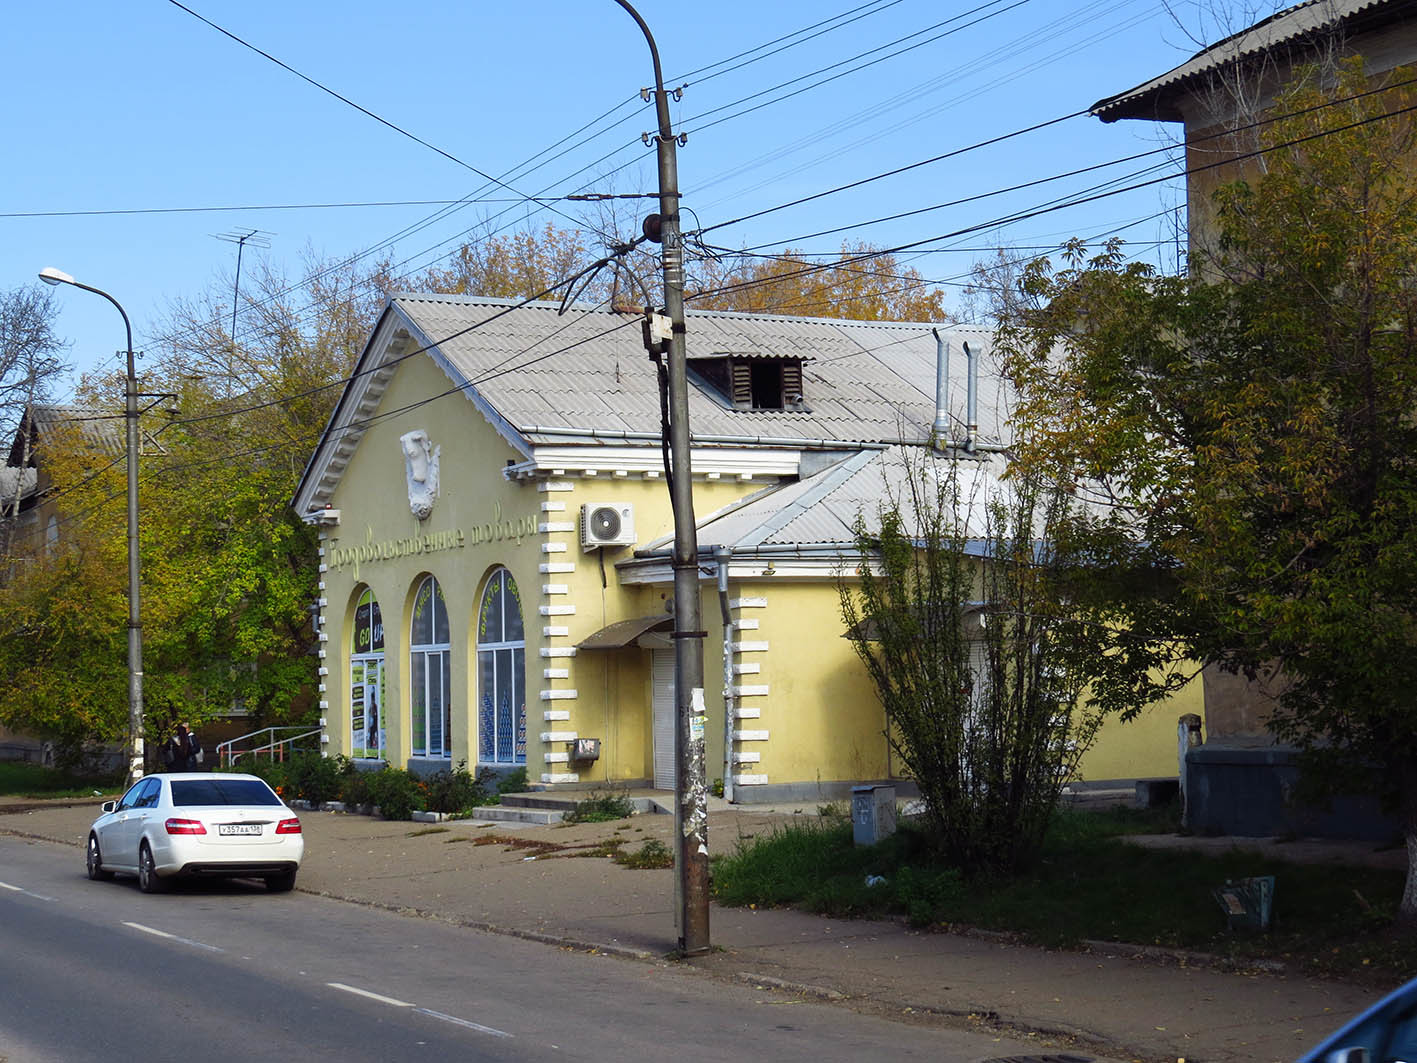 Ангарск. Часть 2: кварталы Старого города 